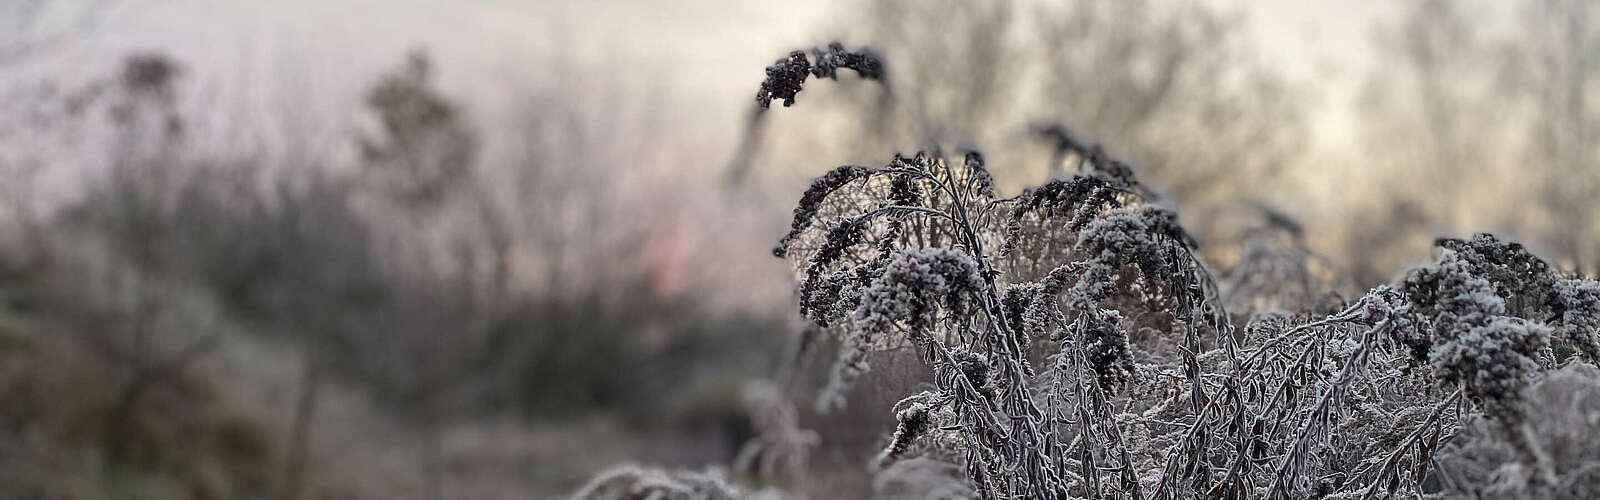 Frostiger Morgen,
        
    

        Foto: TVF Fläming/Susan Gutperl